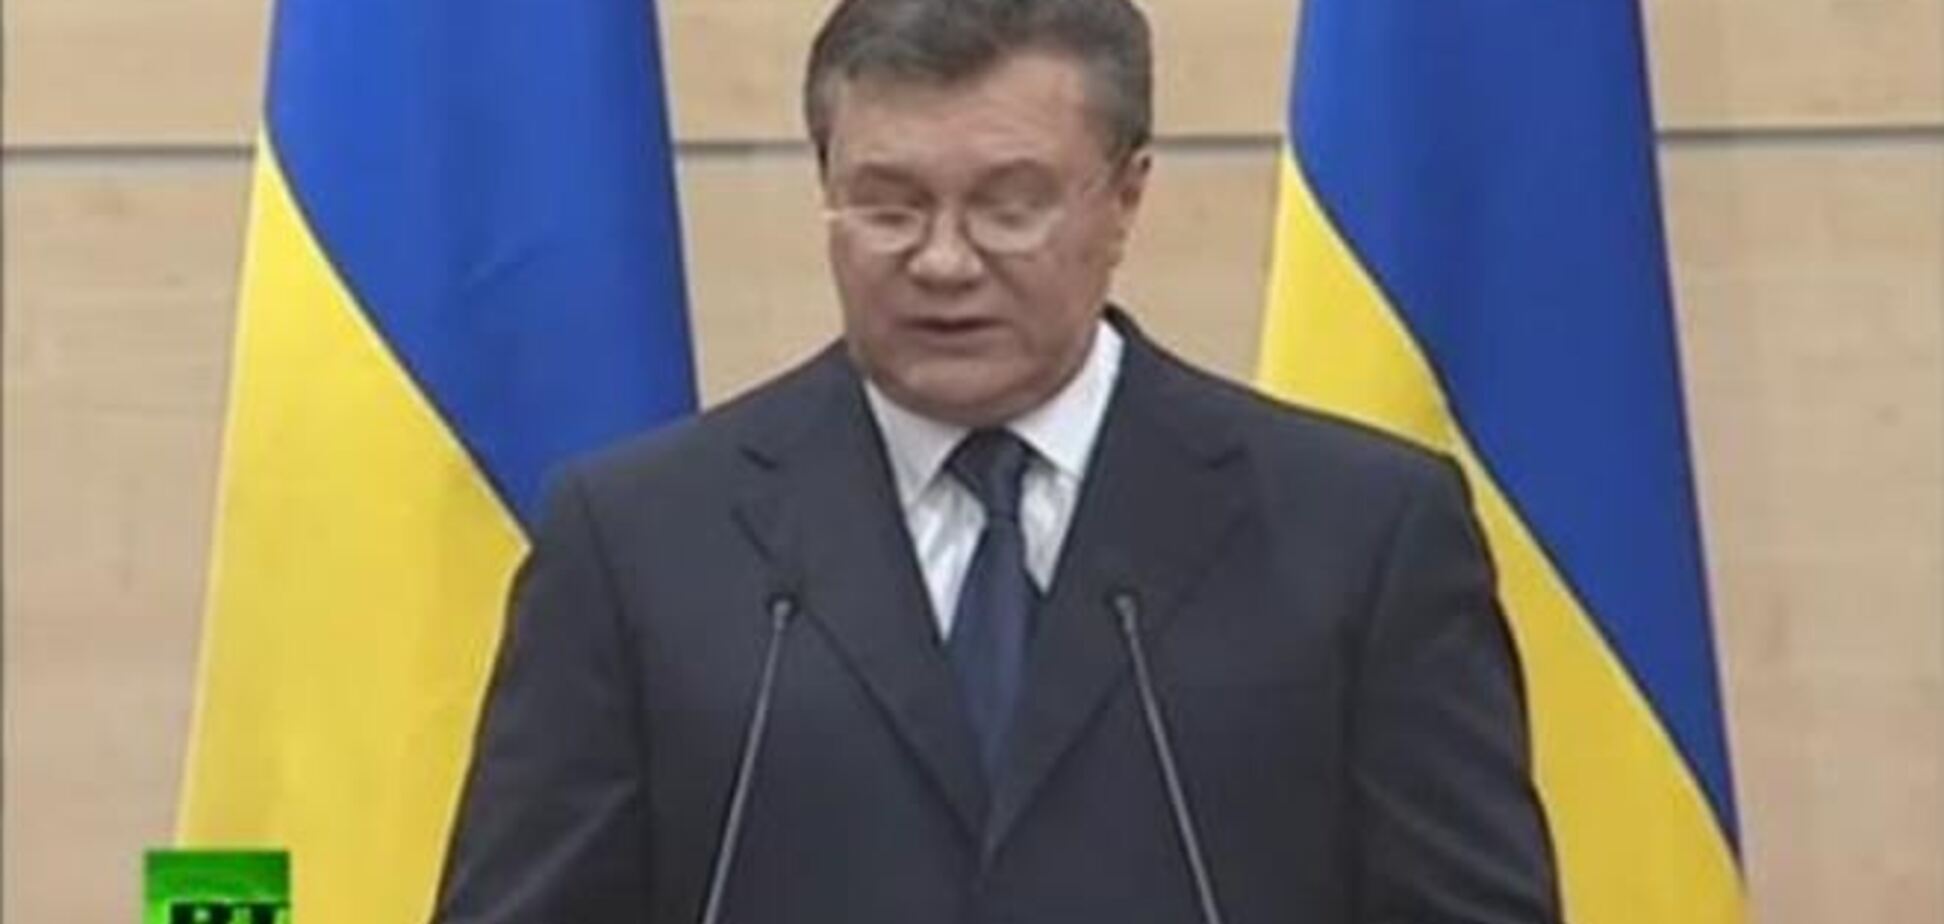 Текст виступу Януковича писали російські фахівці - ЗМІ